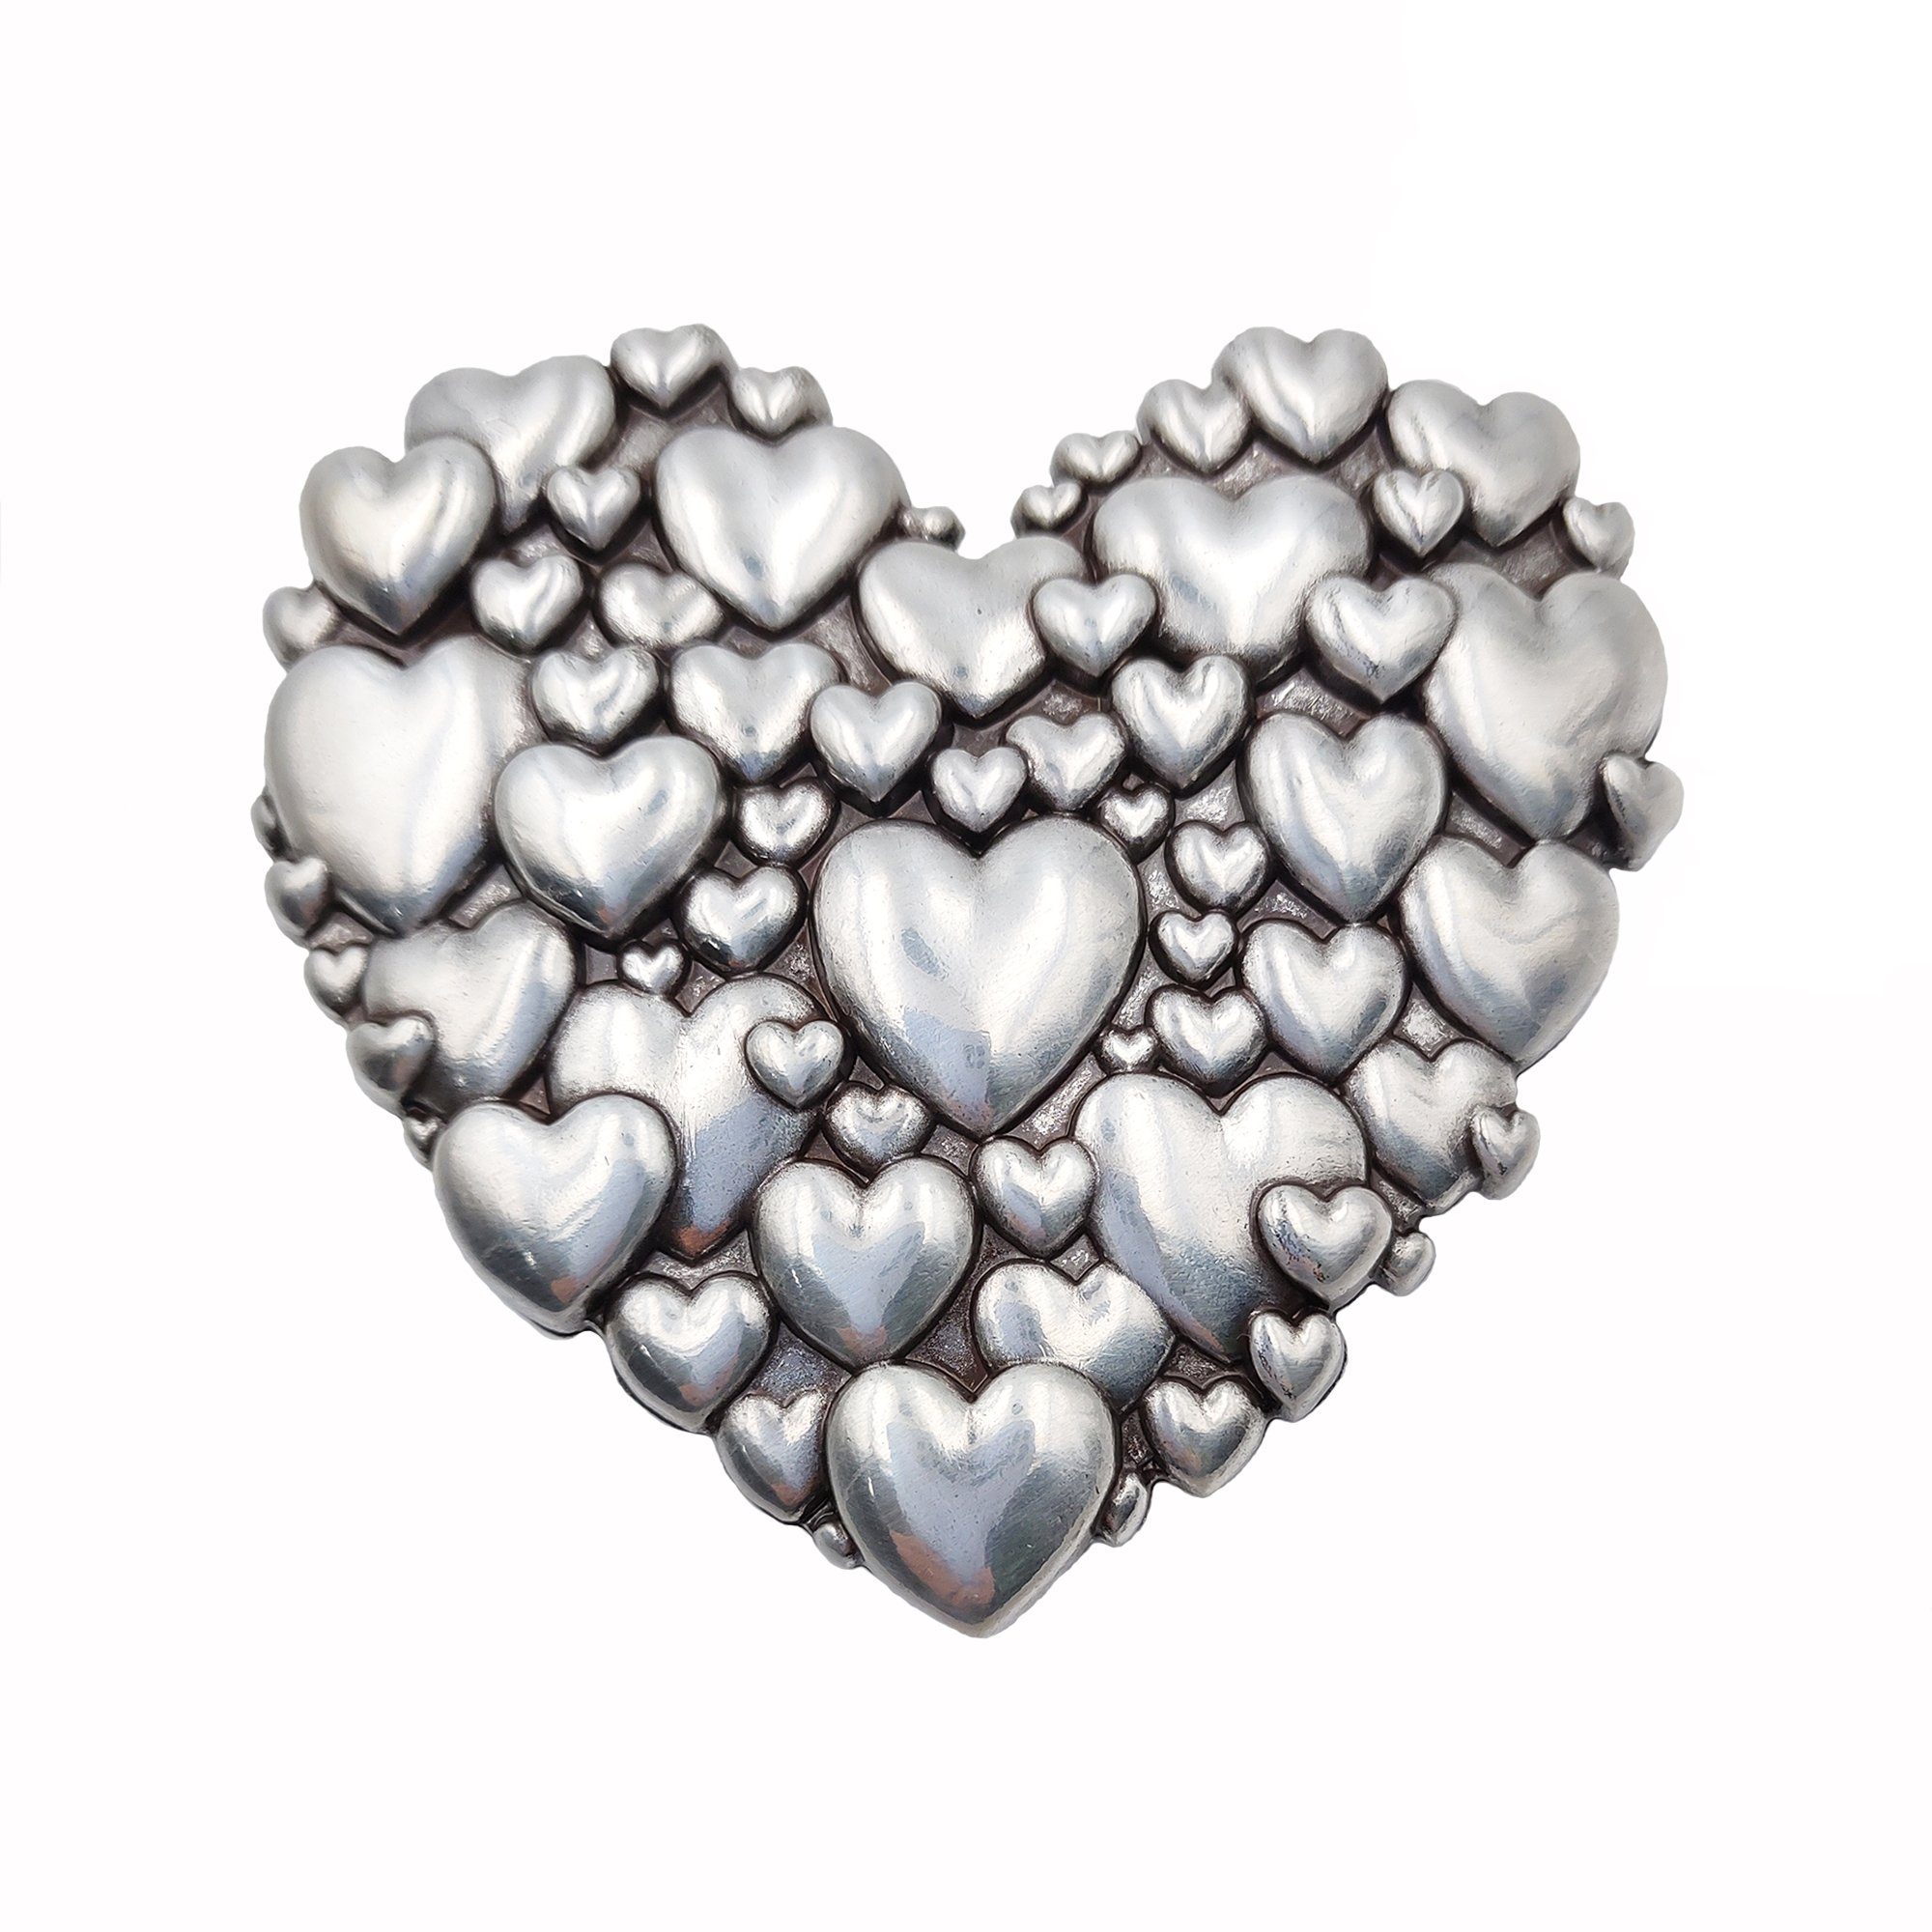 Cassandra Accessoires Gürtelschnalle Wechselschnalle Gürtelschließe Buckle "Heart" im außergewöhnlichen Design mit verspielten Herzen